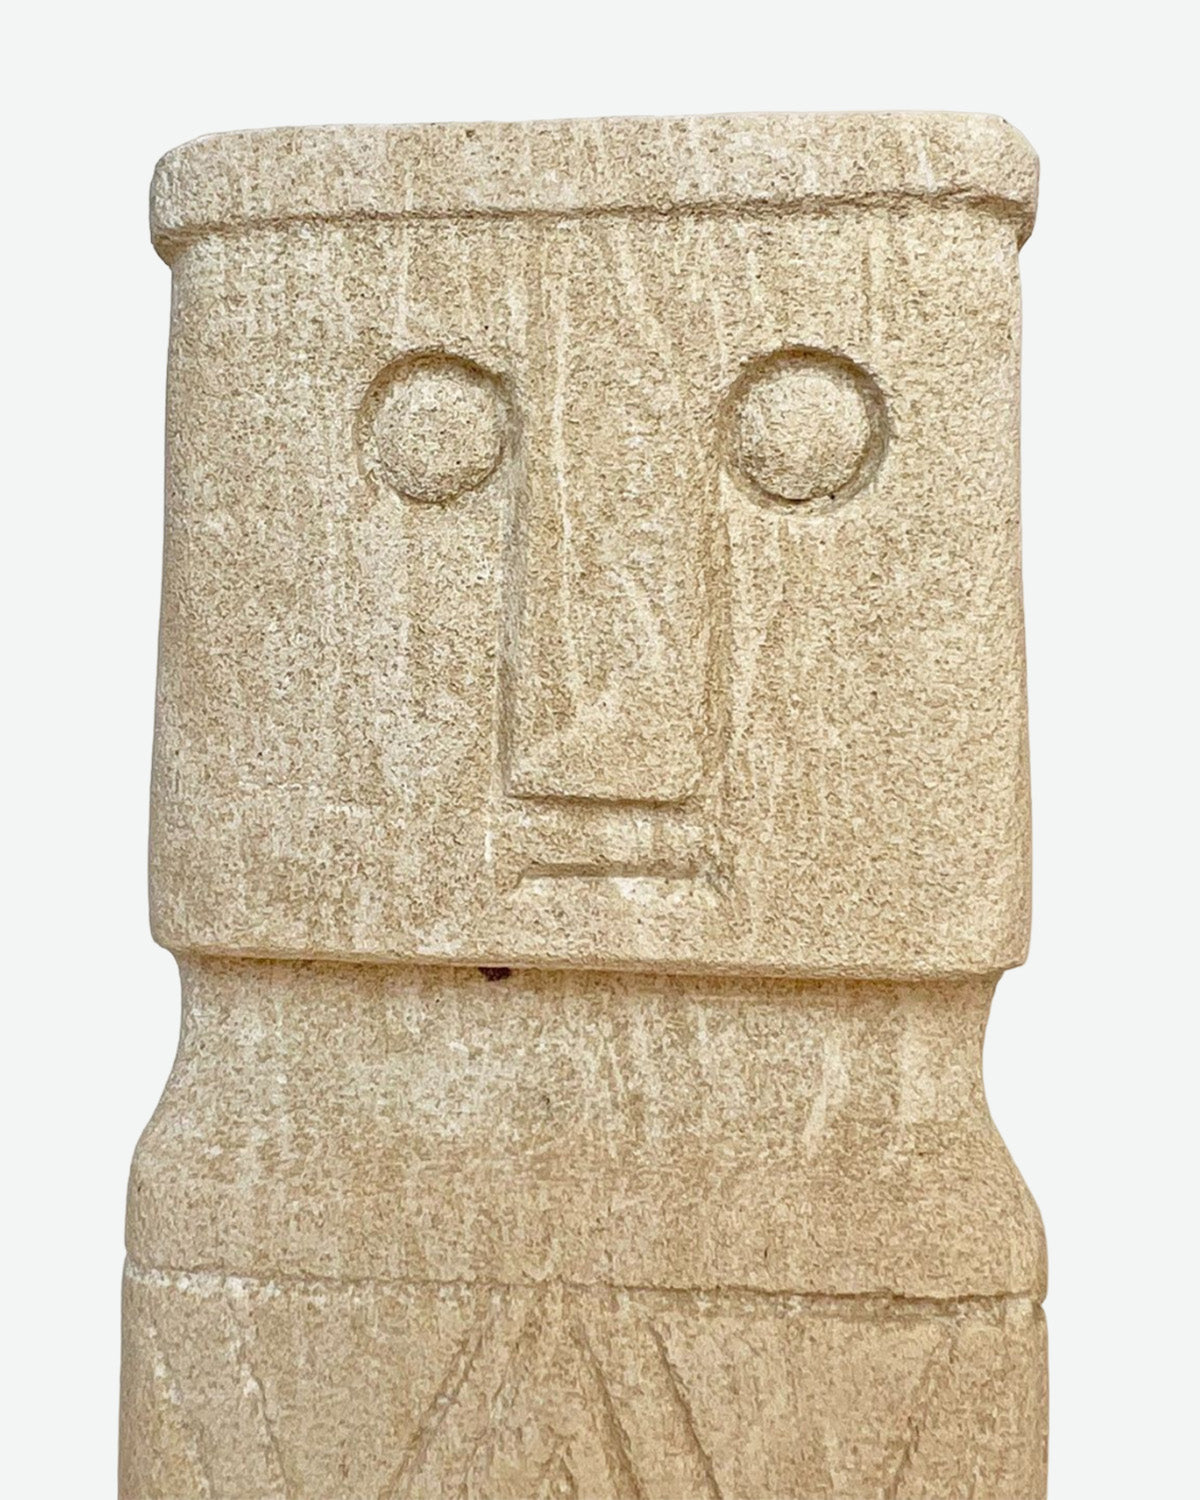 Decorative figure Sura